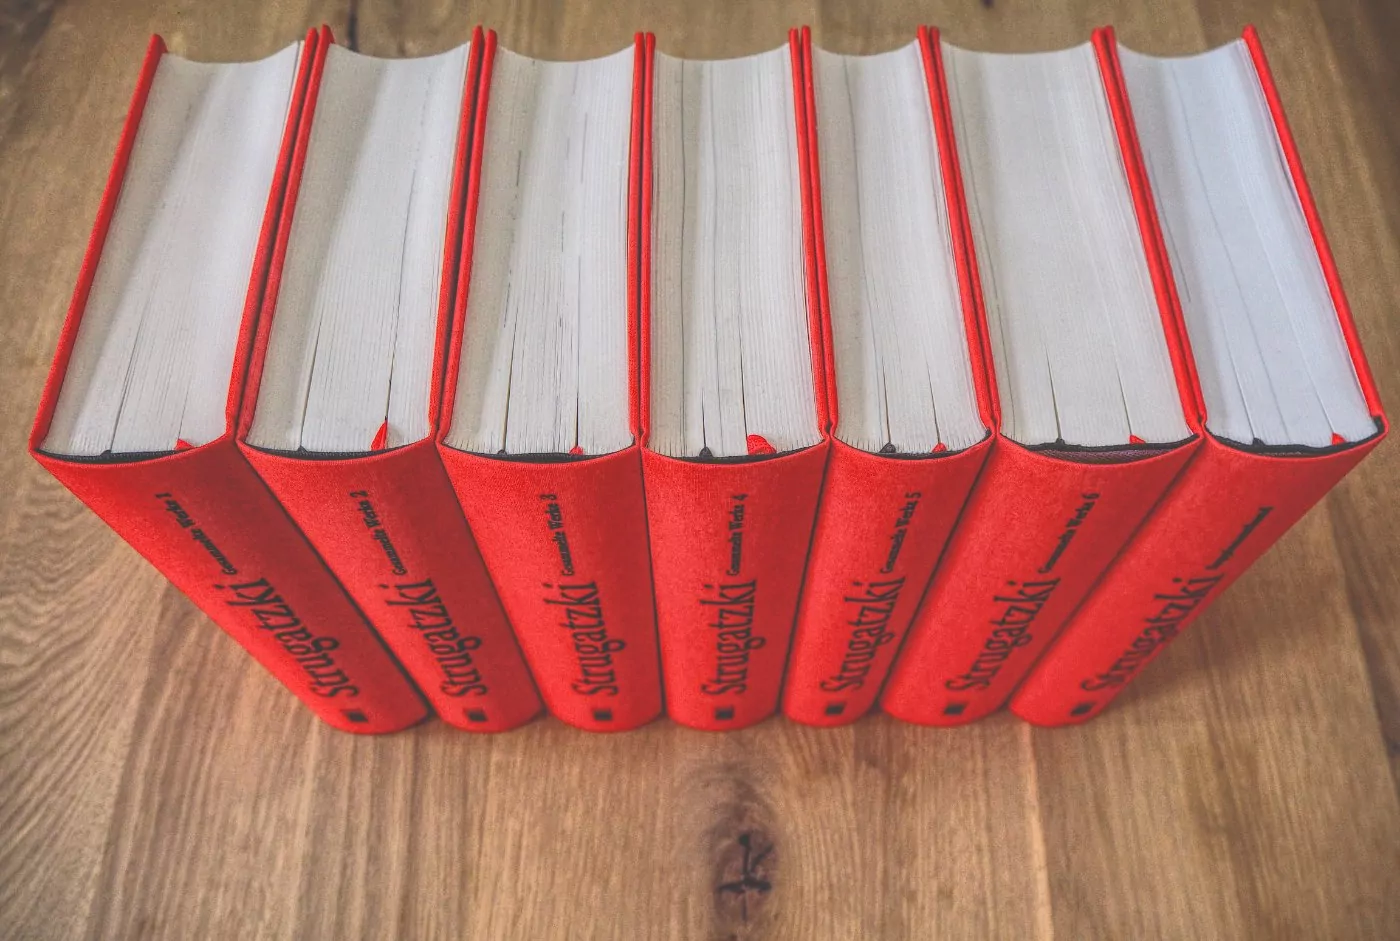 Ein Stapel roter Bücher auf einem Holztisch.